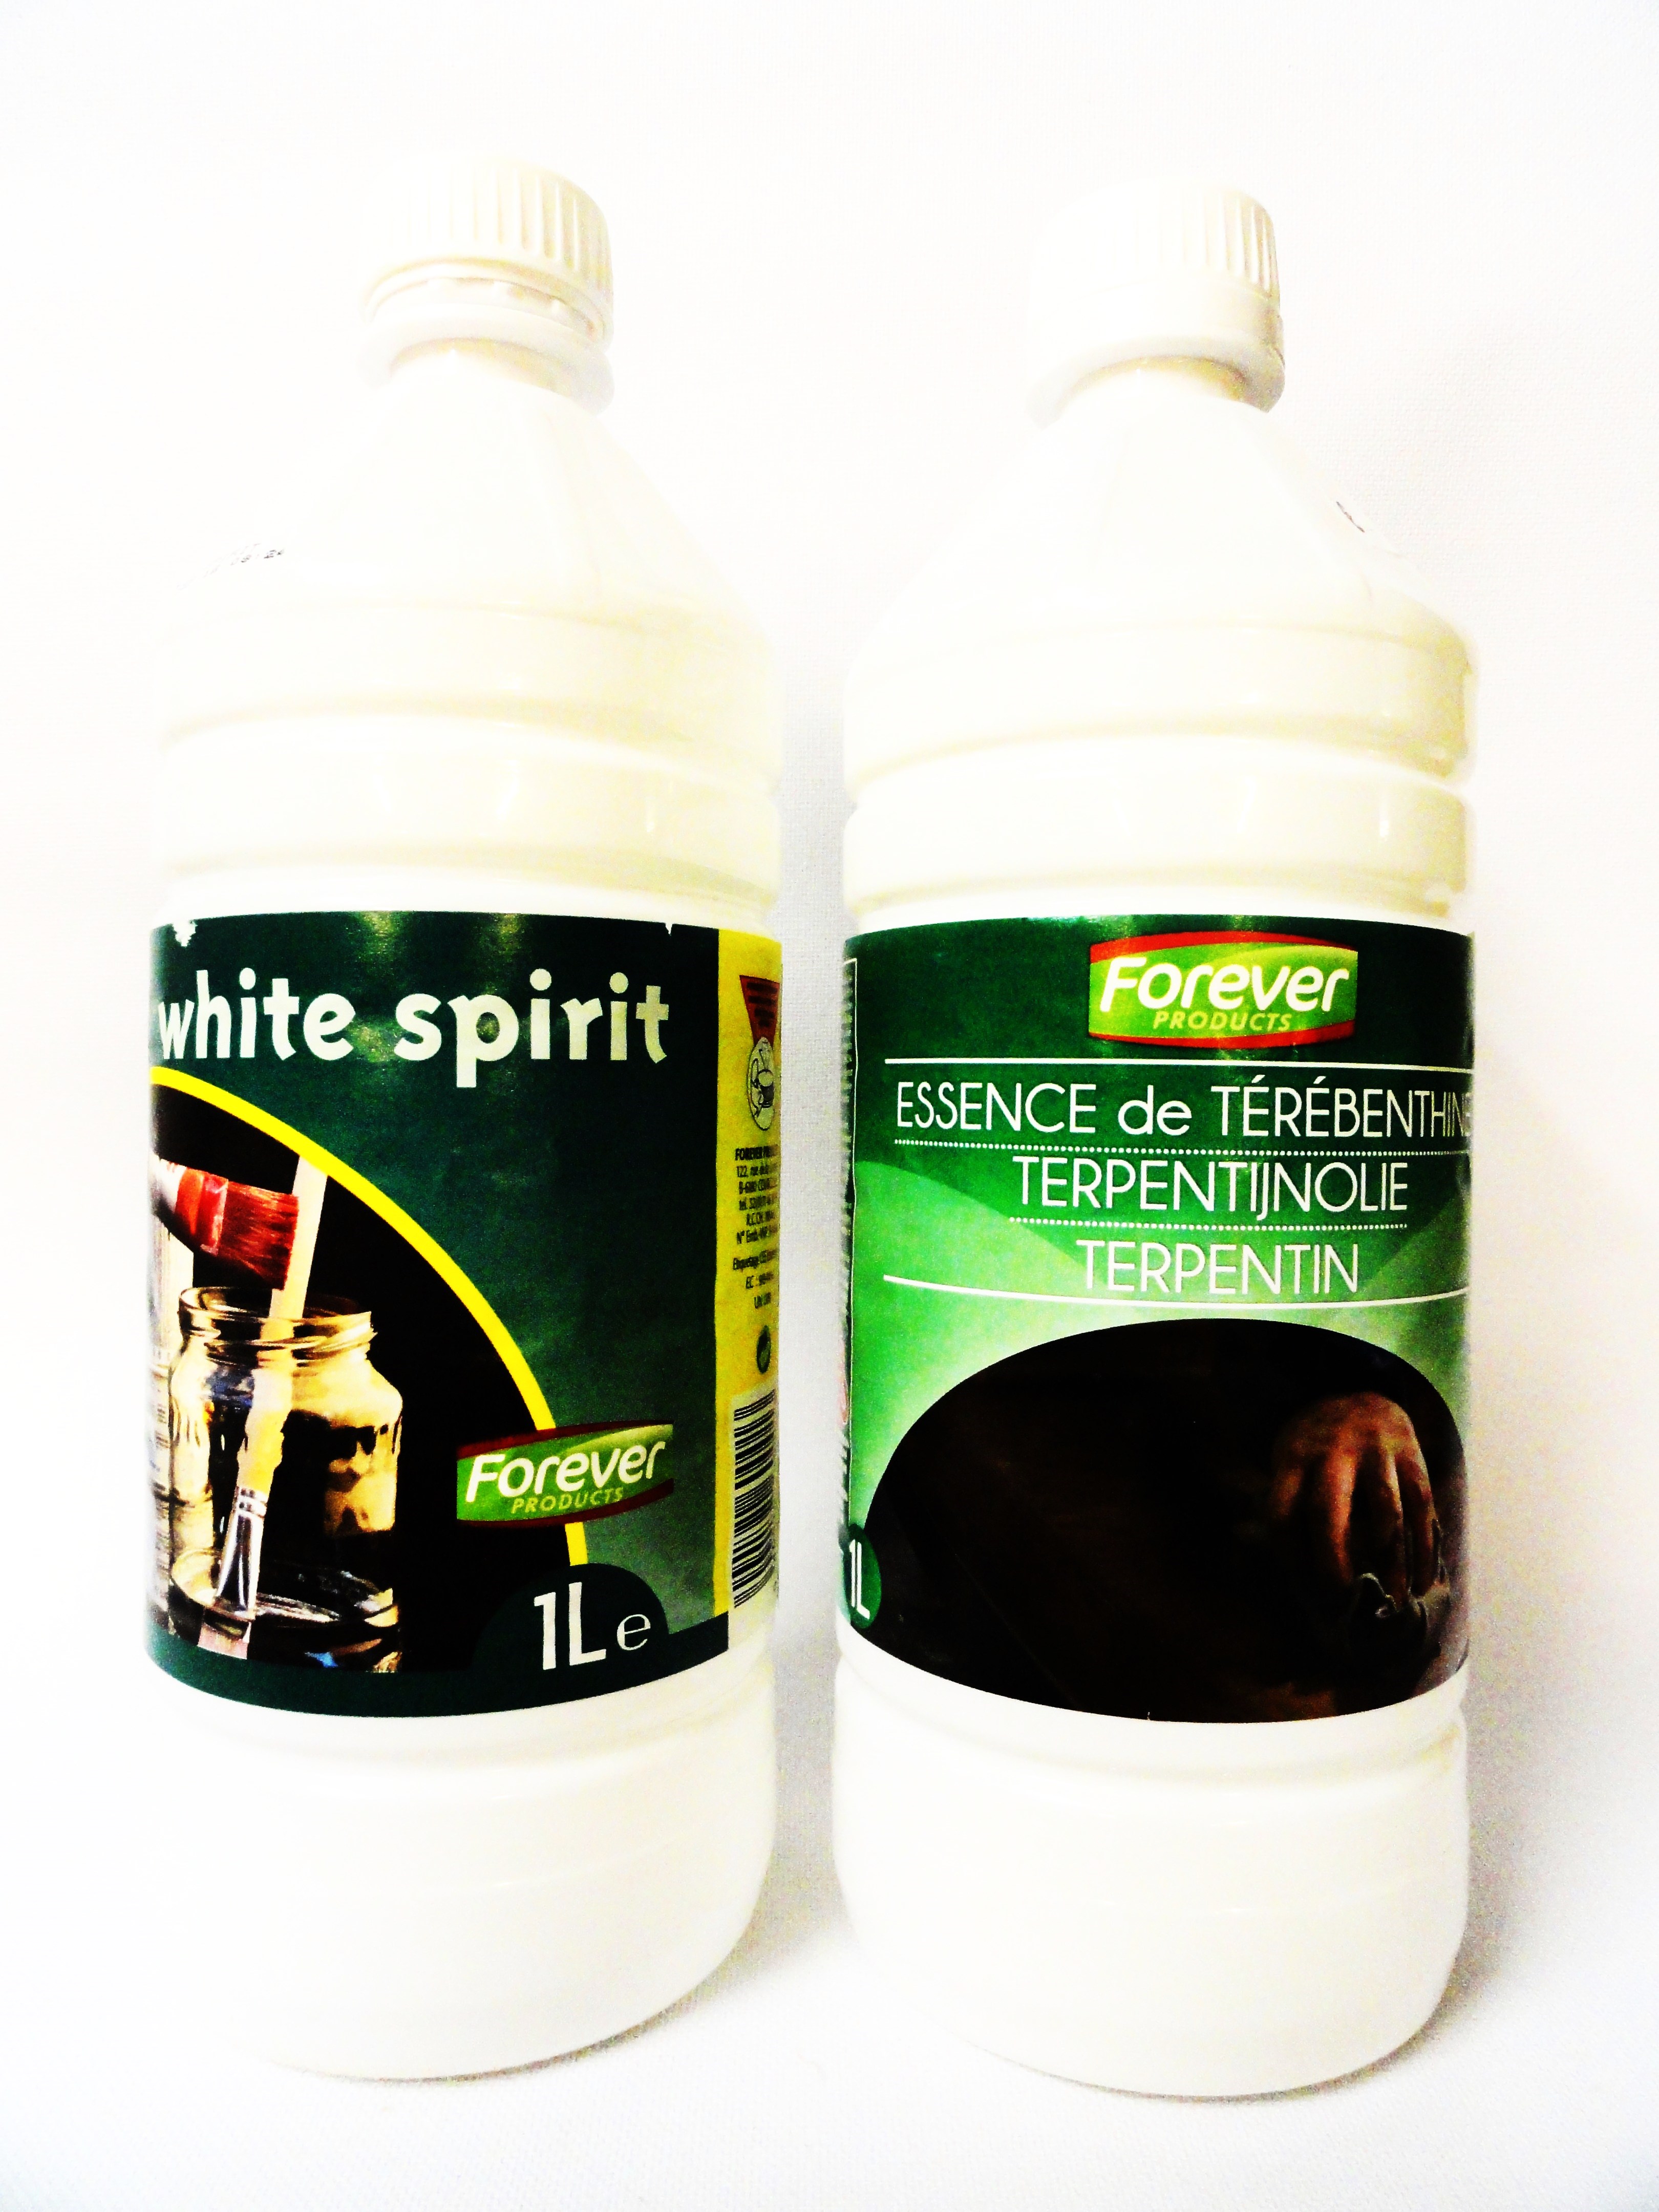 FOTO: White-spirit en terpentijn kunnen ook in 1 liter- flessen worden aangekocht. Dit is meestal voordeliger.